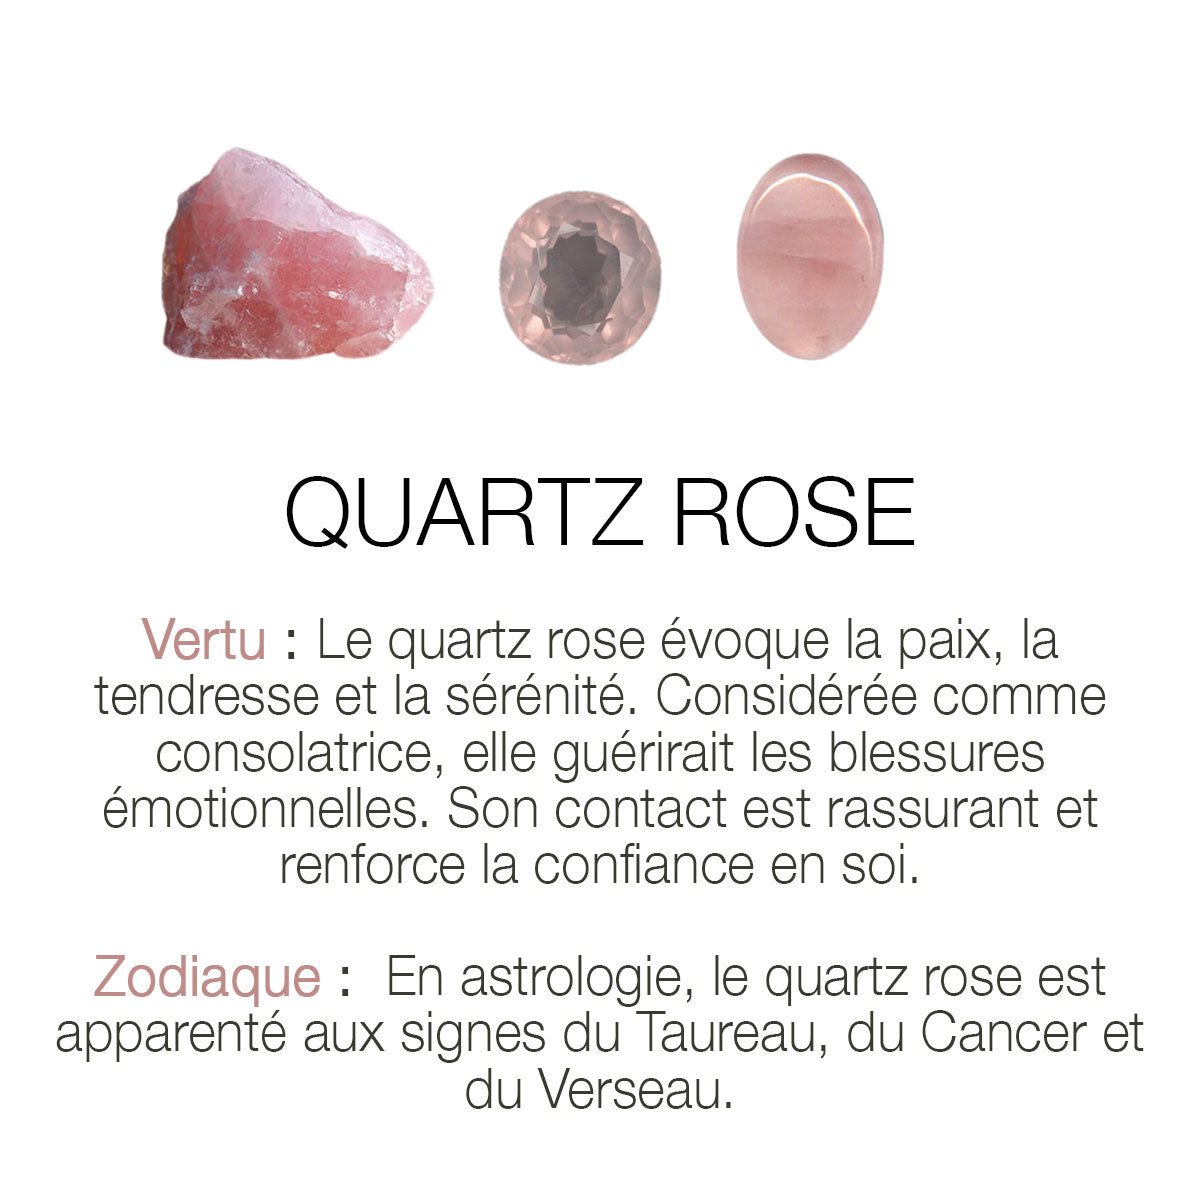 Créole "Sharp" - Quartz rose